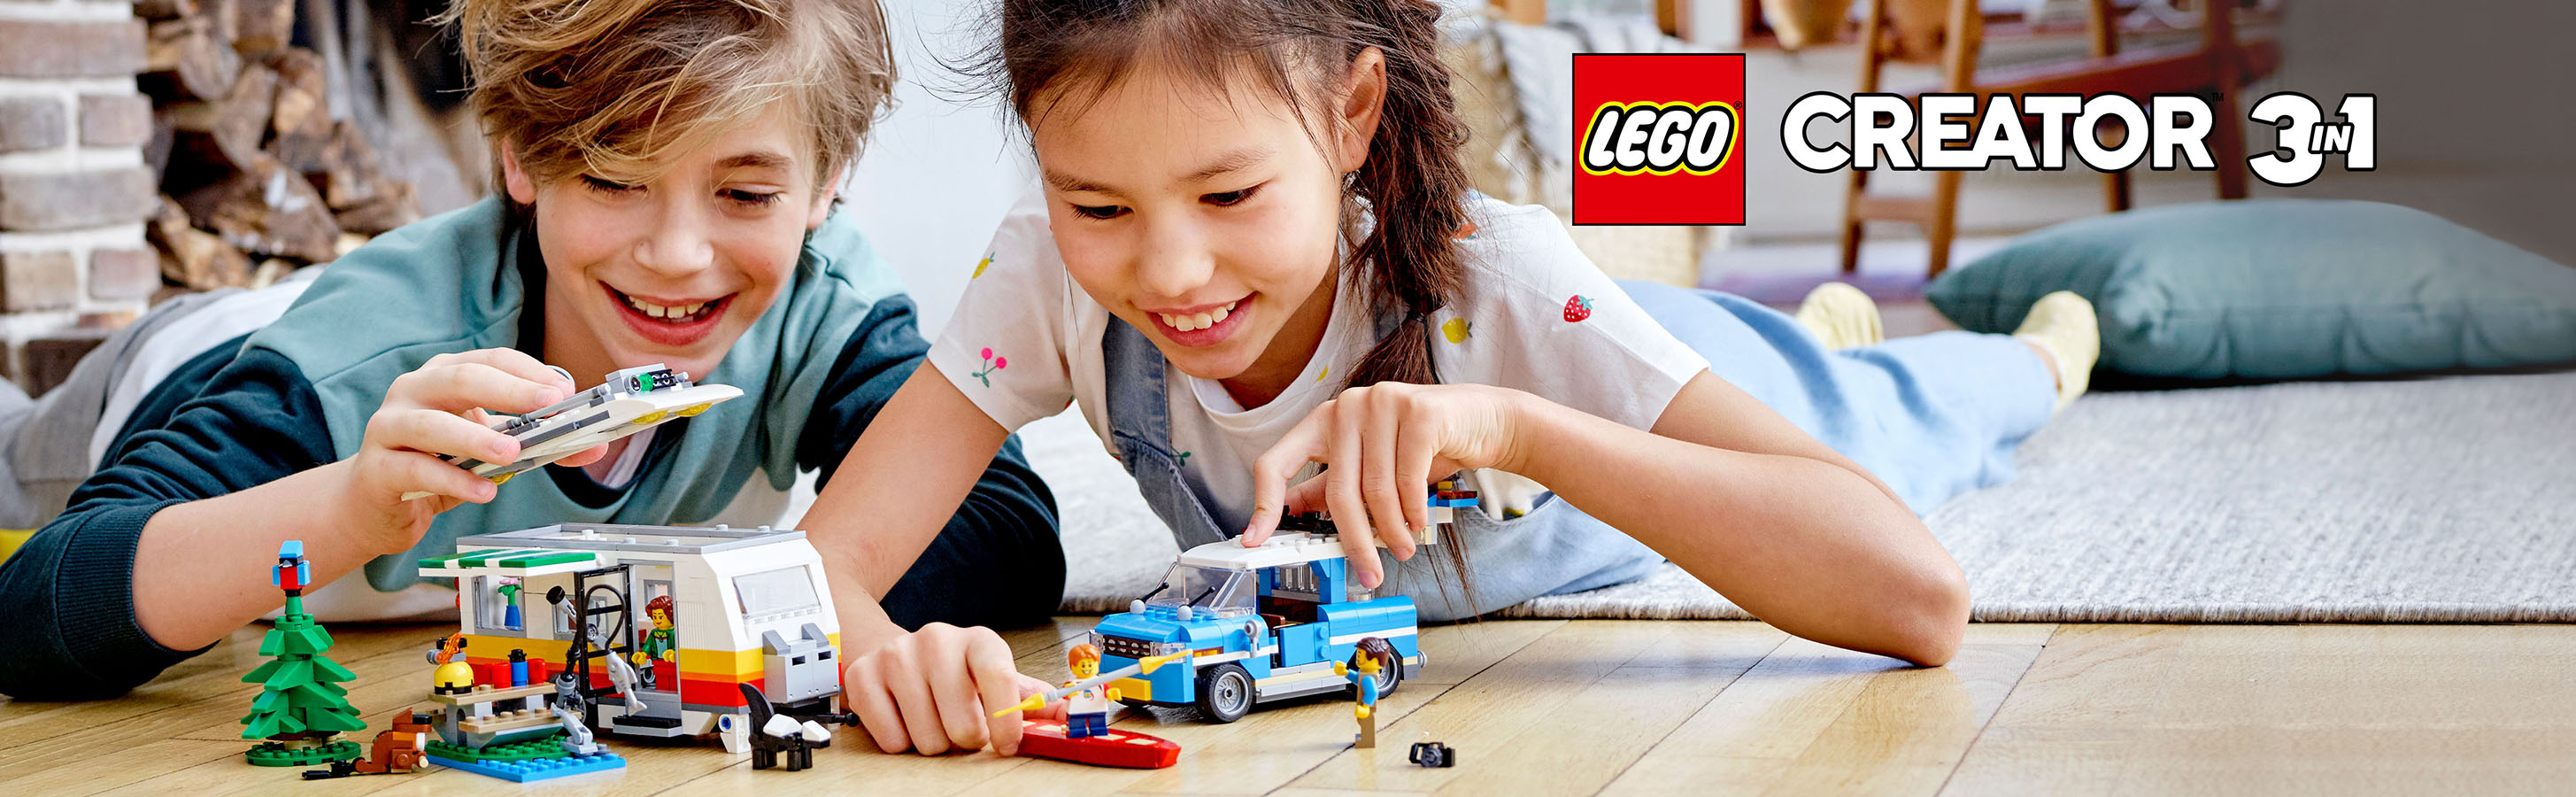 3 zábavná dobrodružství s LEGO® kostkami